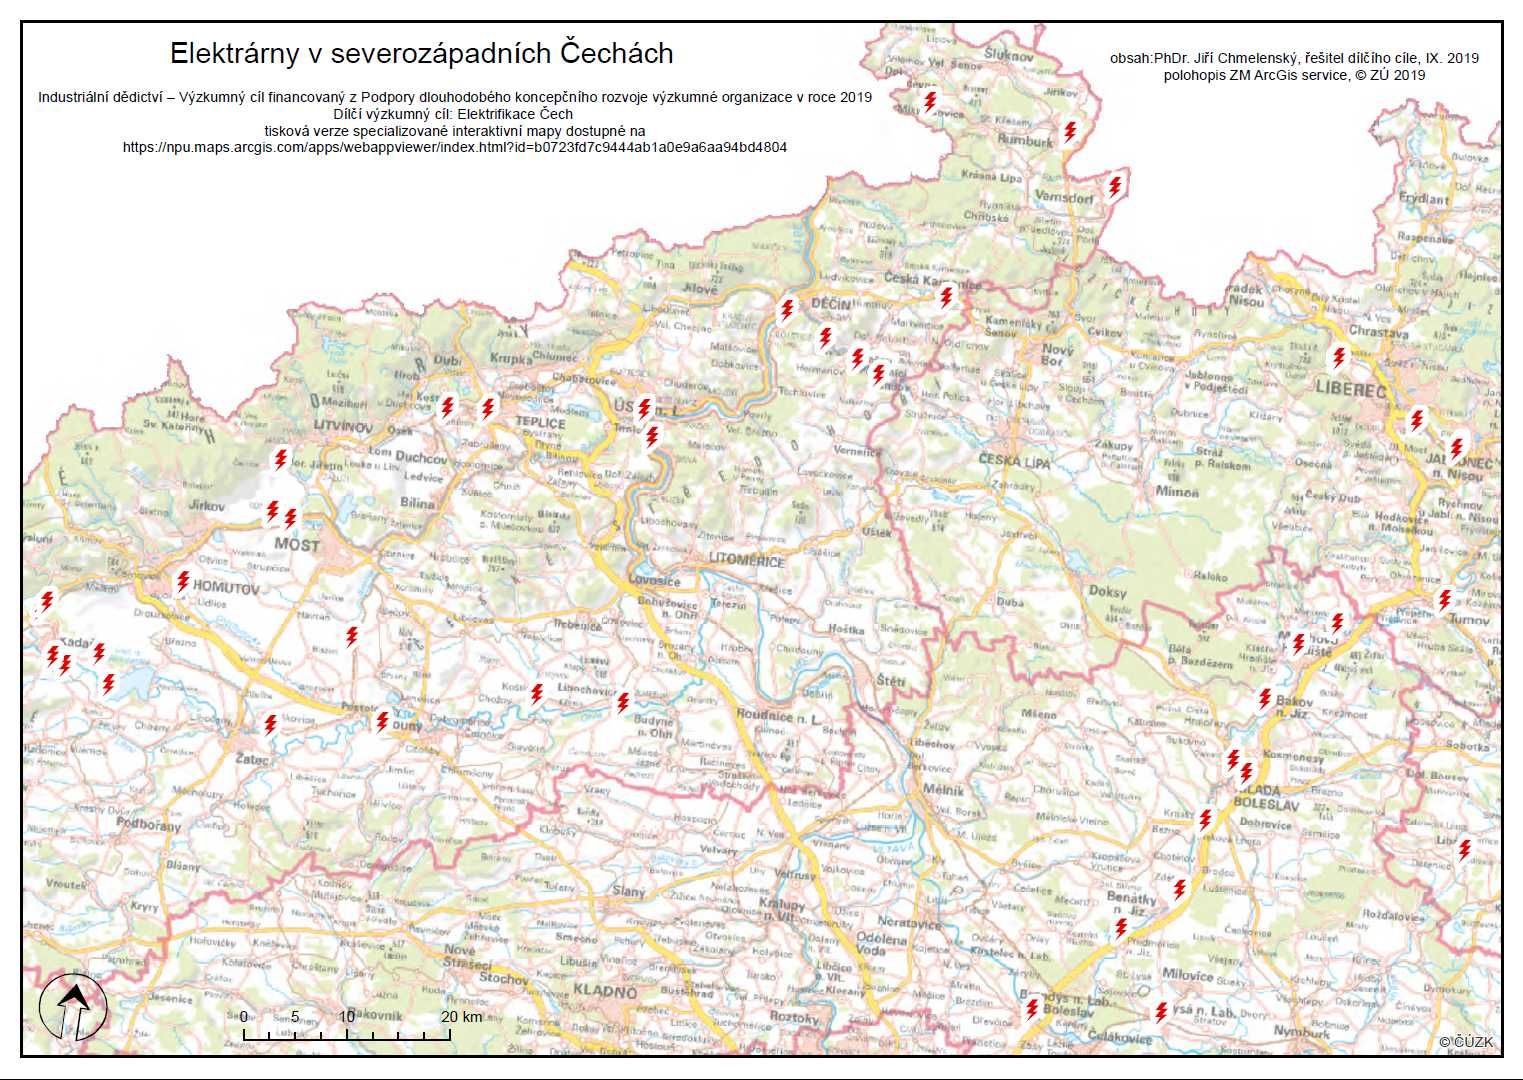 Mapa elektráren severozápadních Čech s odborným obsahem